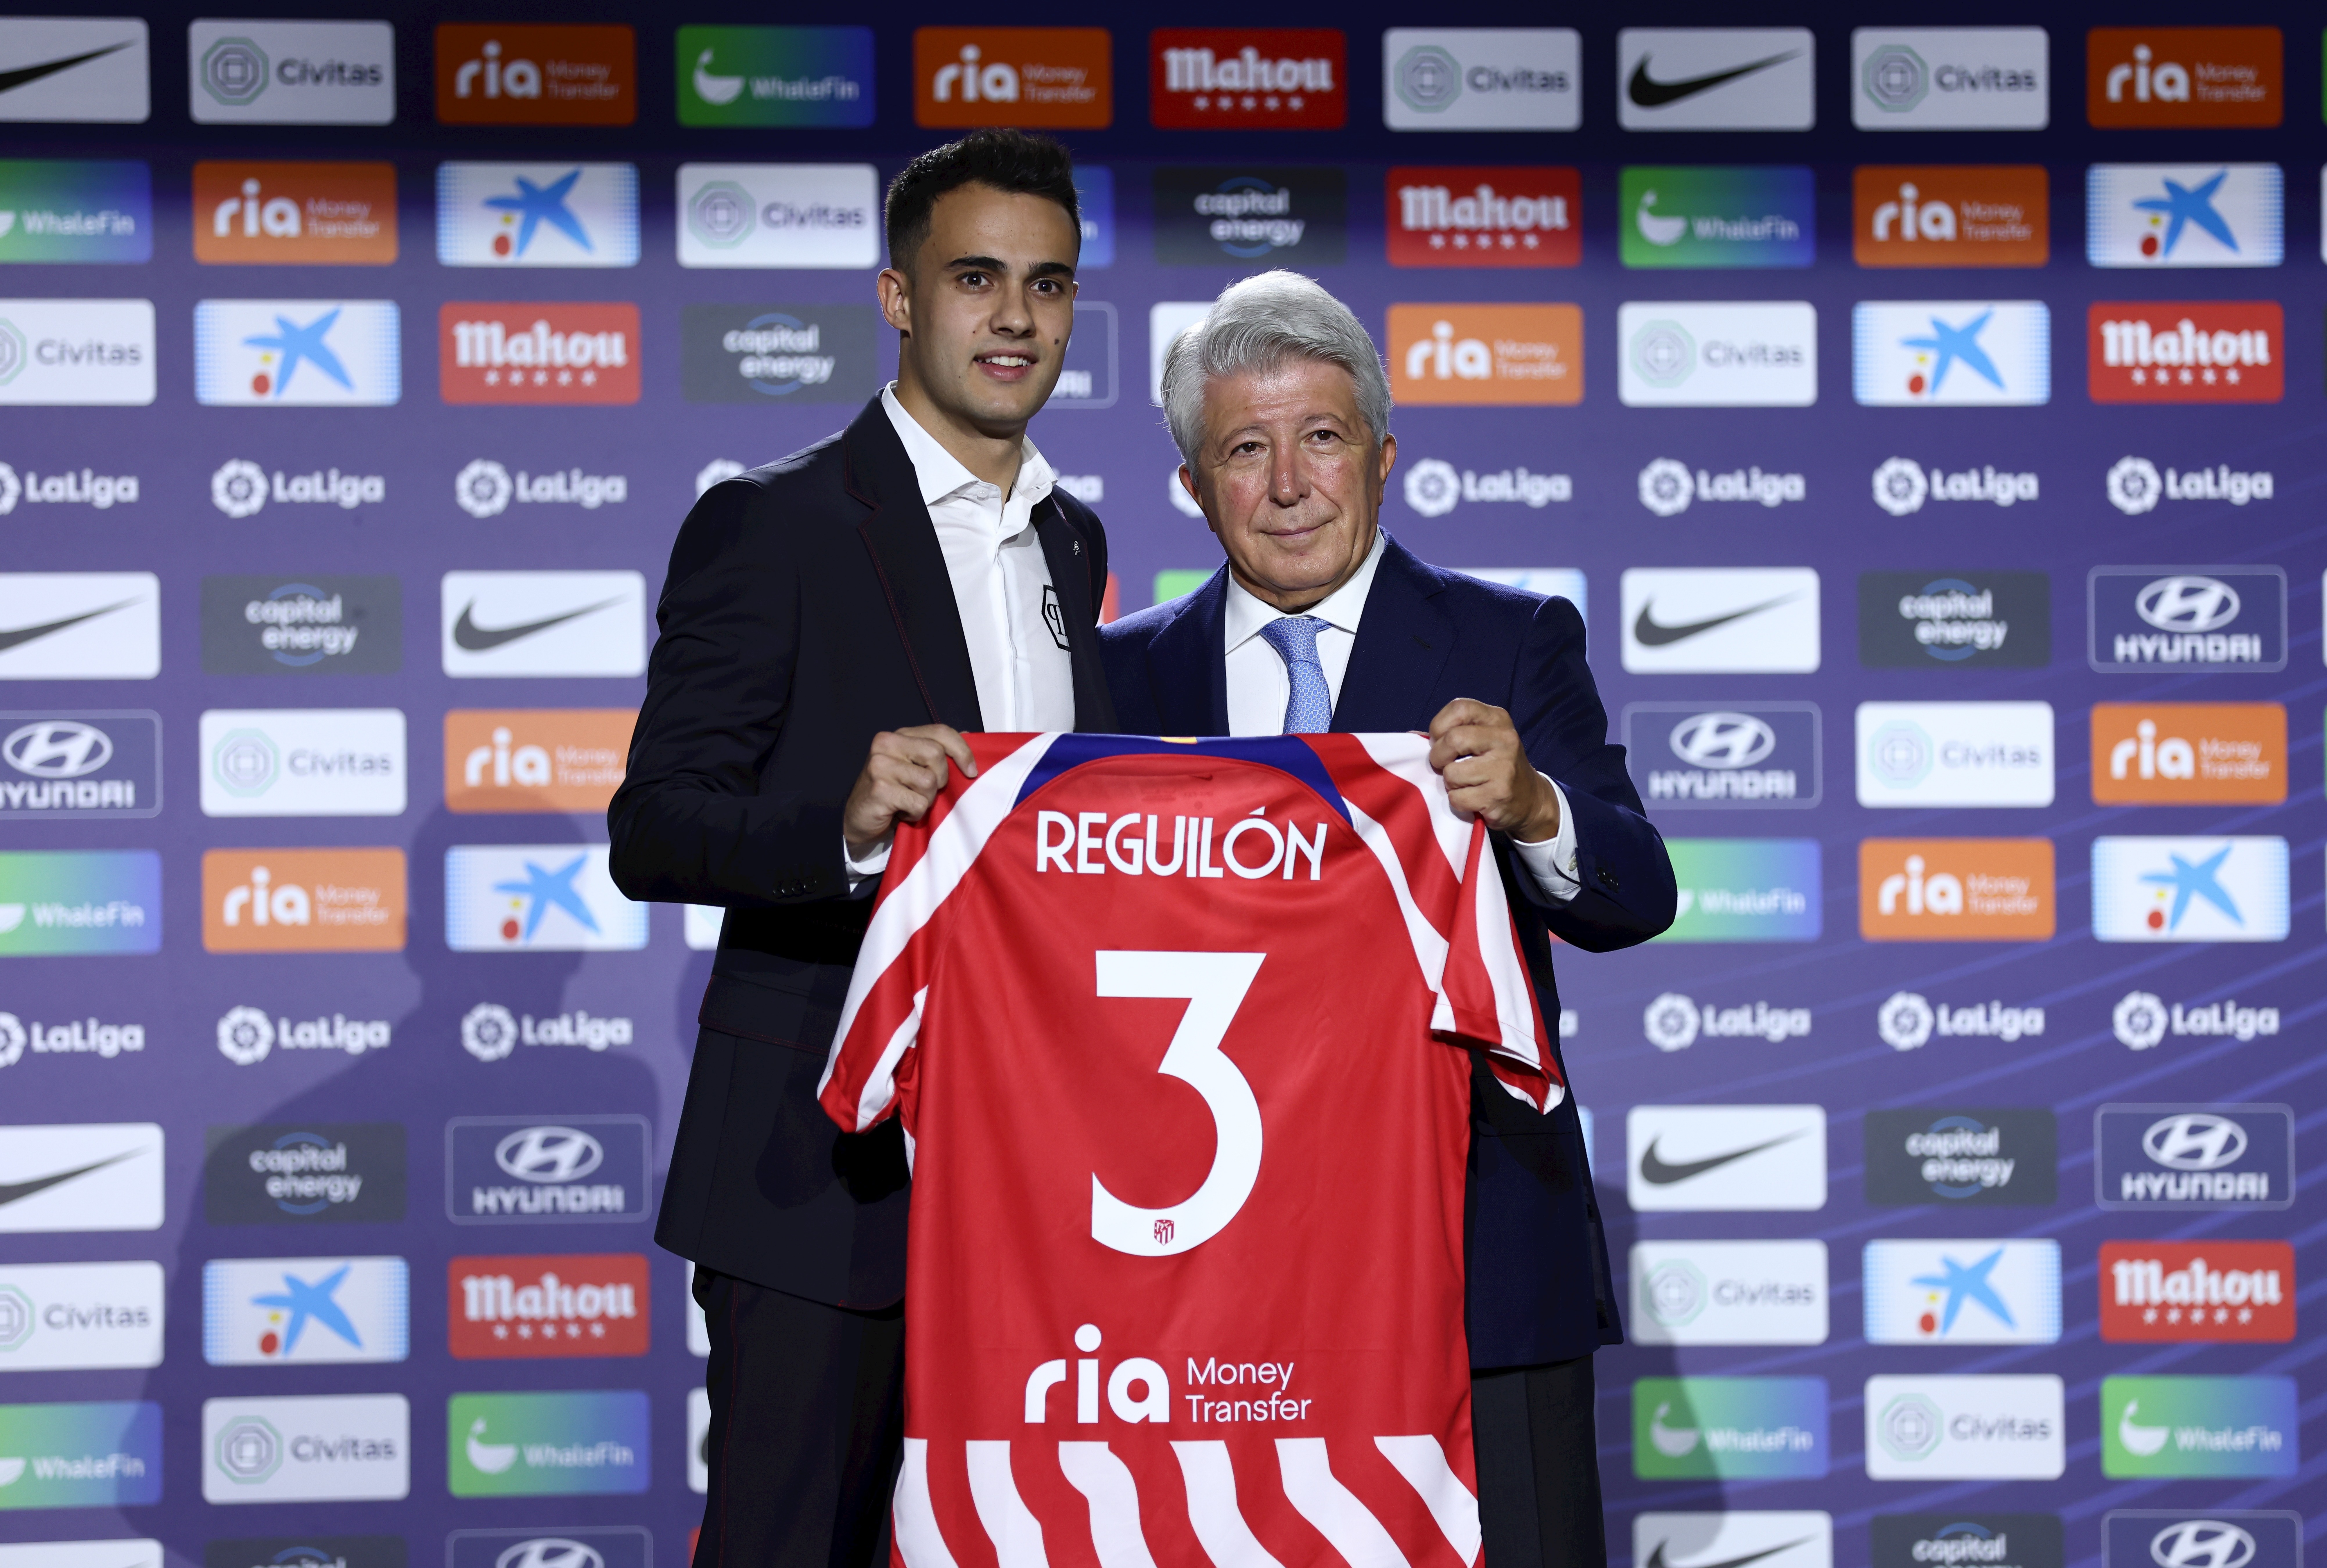 Der 26-jährige Reguilon wechselte letzten Sommer auf Leihbasis zu Atlético Madrid